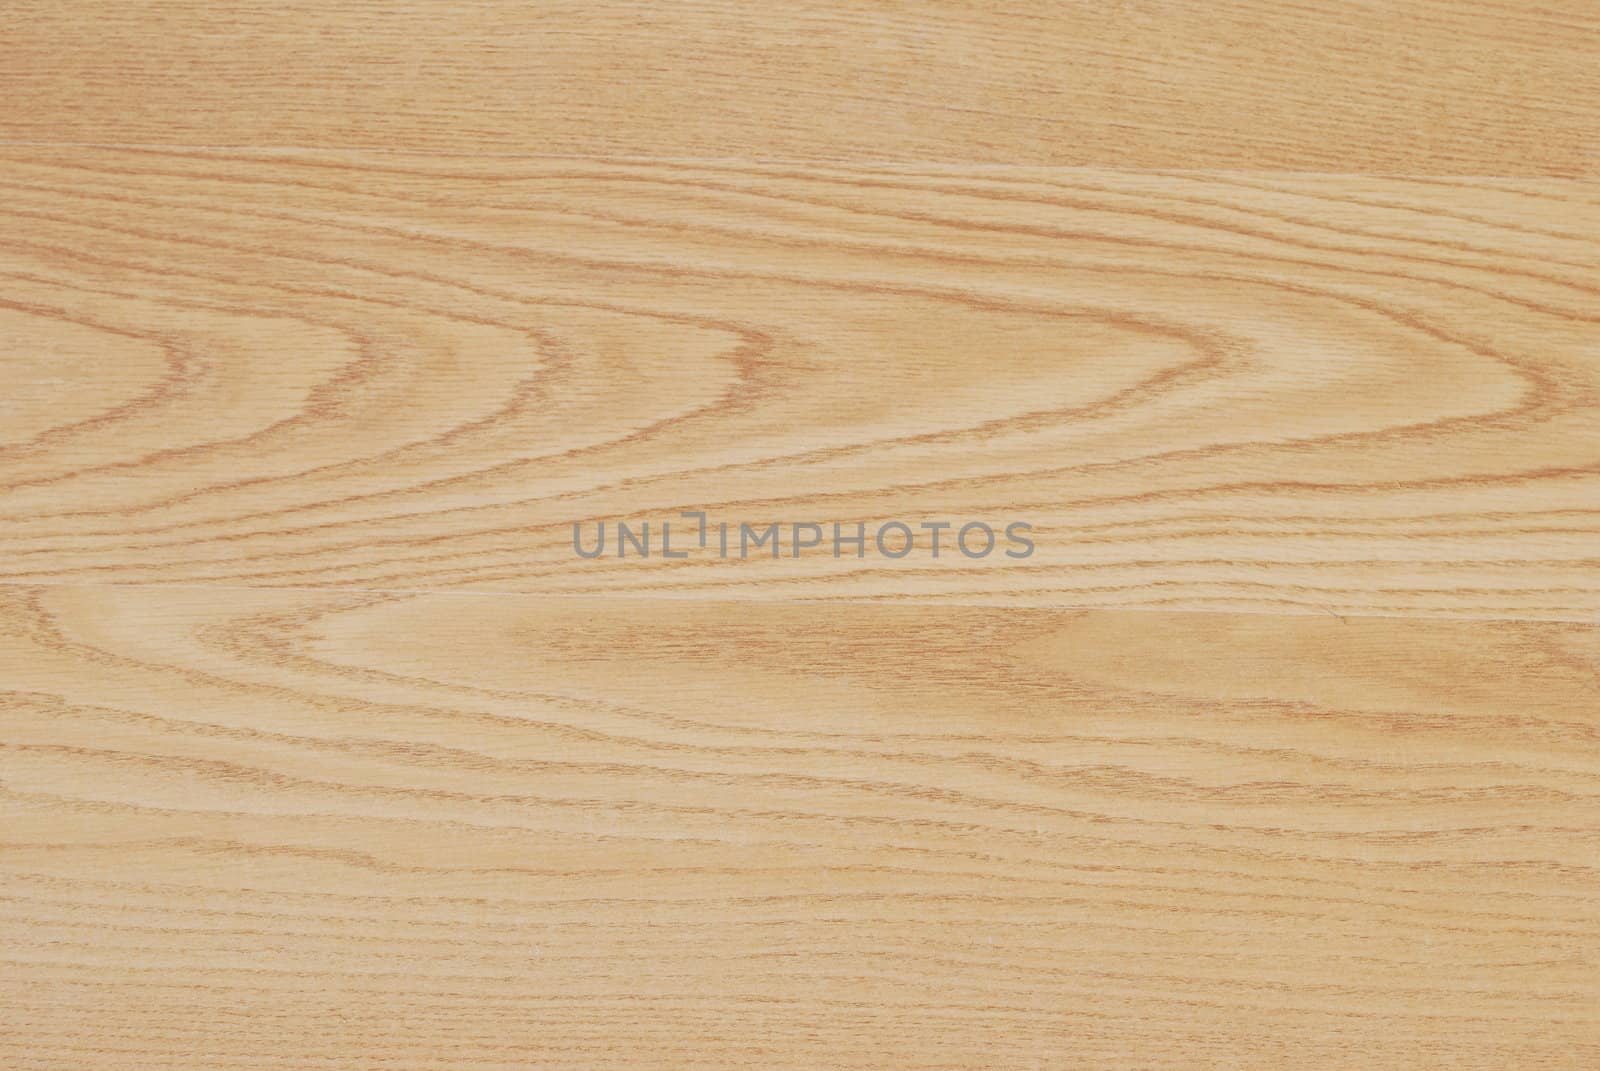 Wooden parquet floor by luissantos84